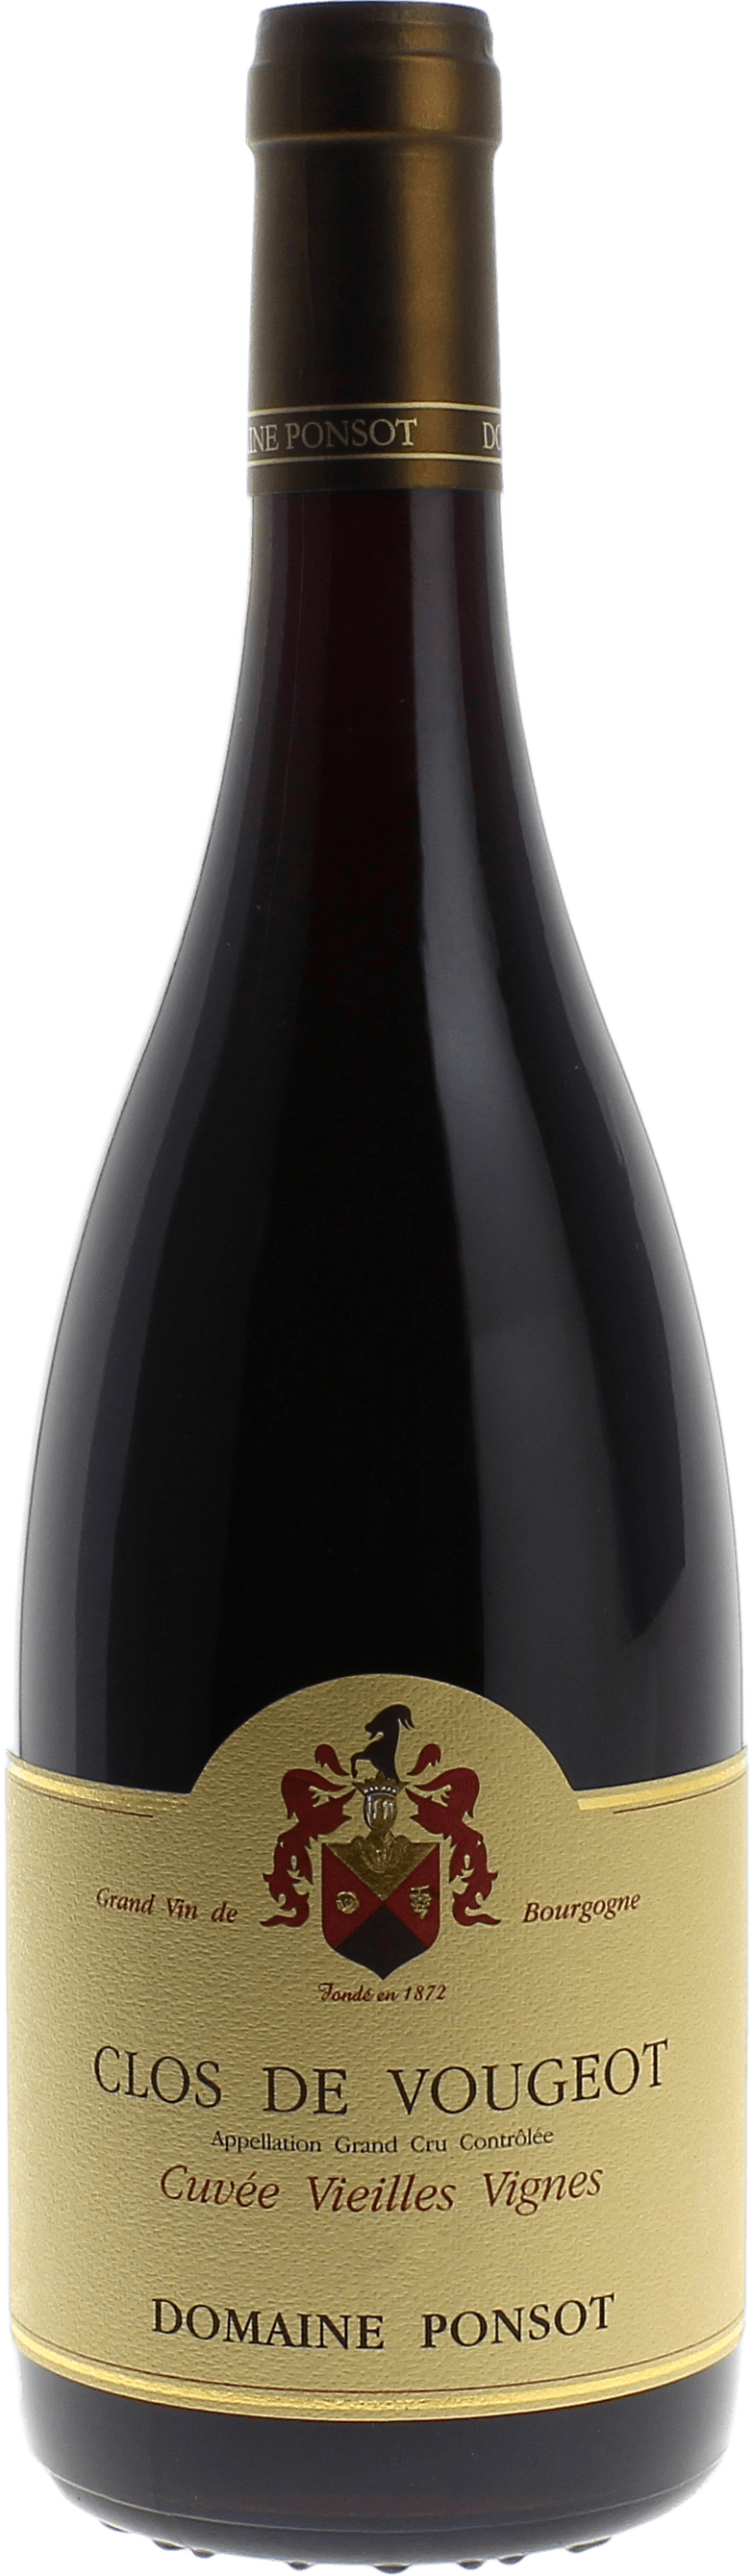 Clos de vougeot grand cru cuve vieilles vignes 2017 Domaine PONSOT, Bourgogne rouge